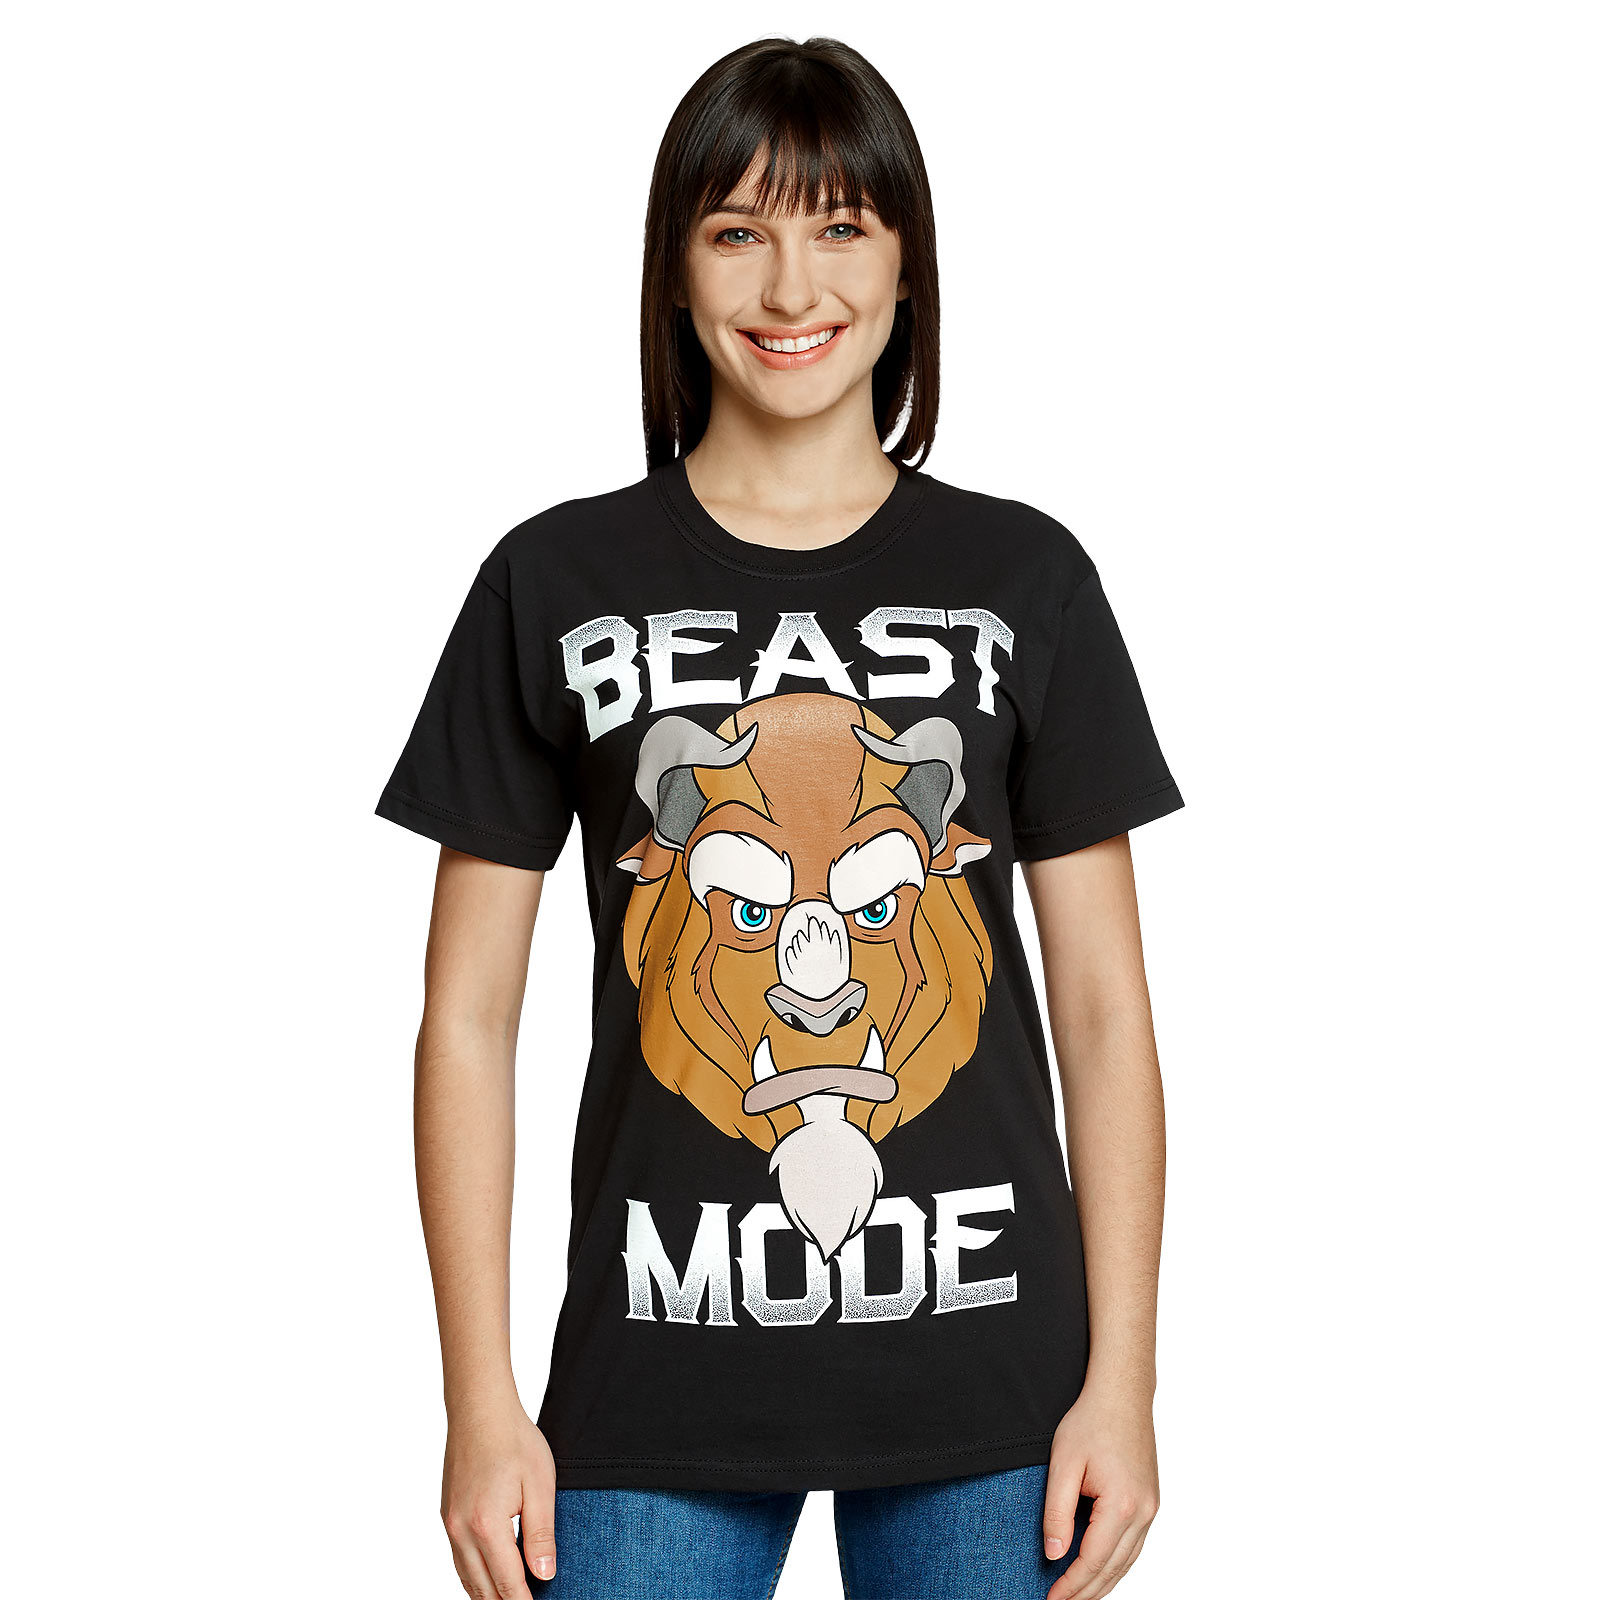 Die Schöne und das Biest - Beast Mode T-Shirt schwarz